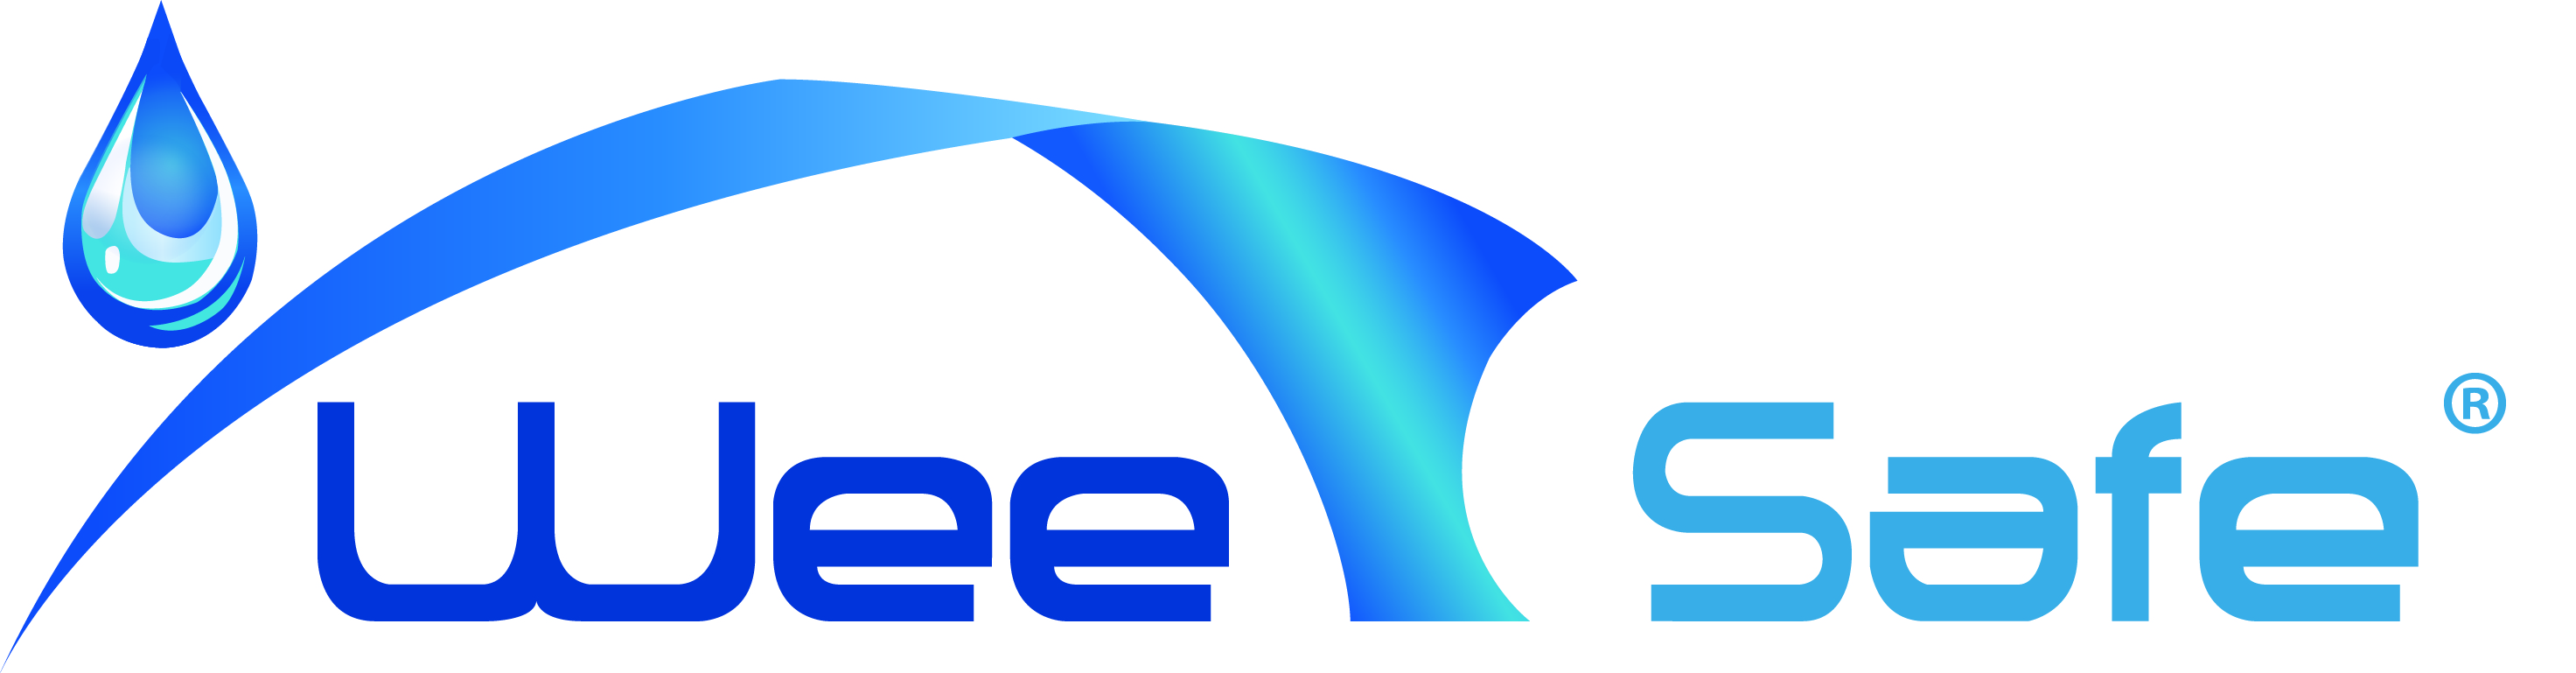 weesafe logo